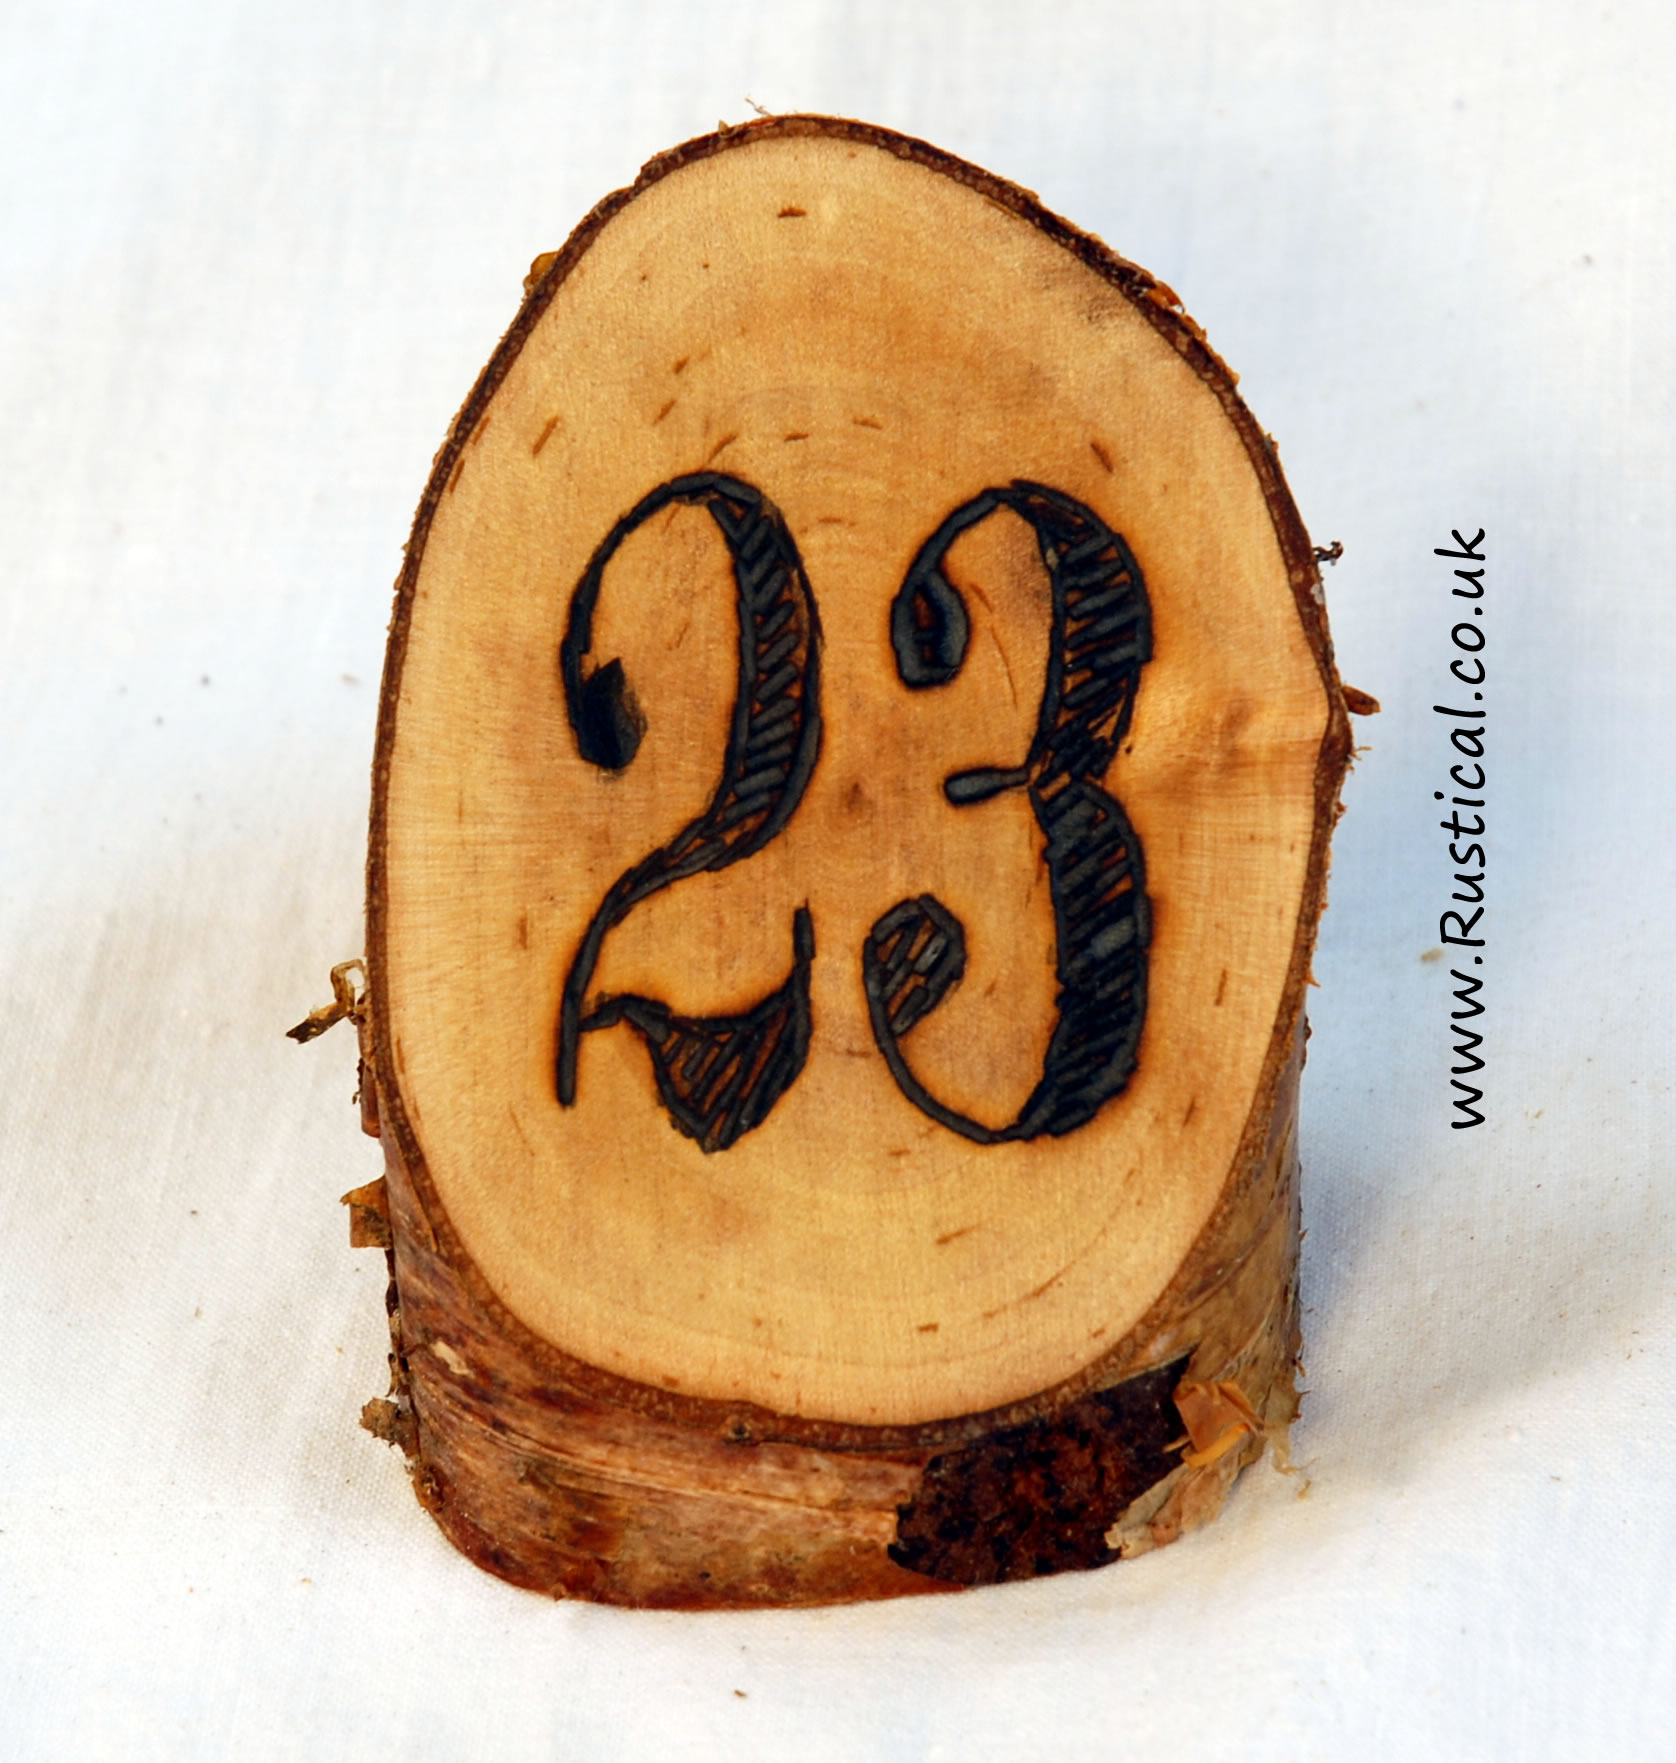 Branded rustic log table numbers